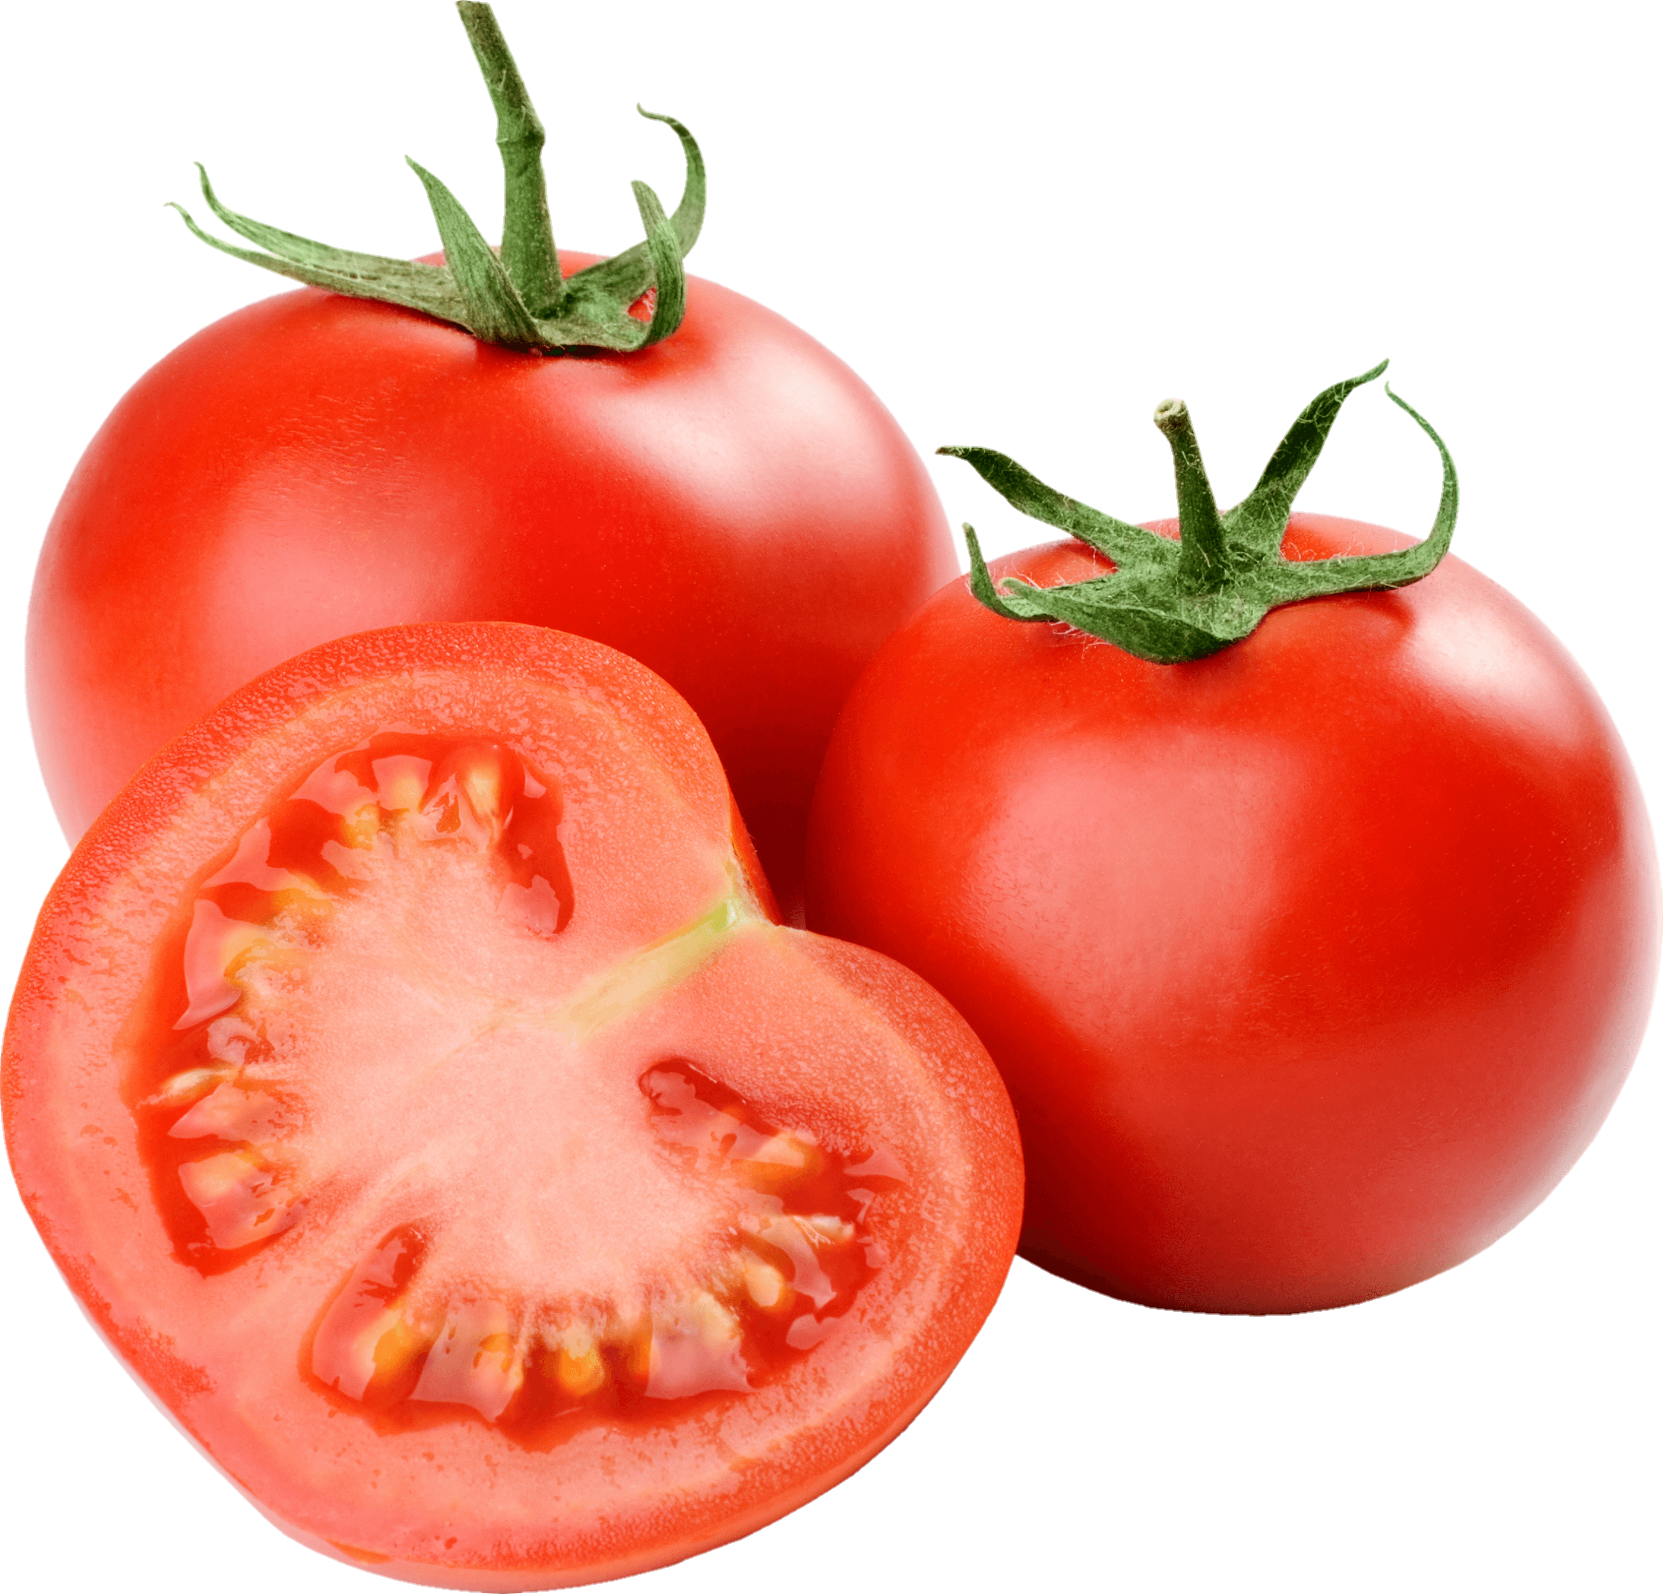 Tomato-27